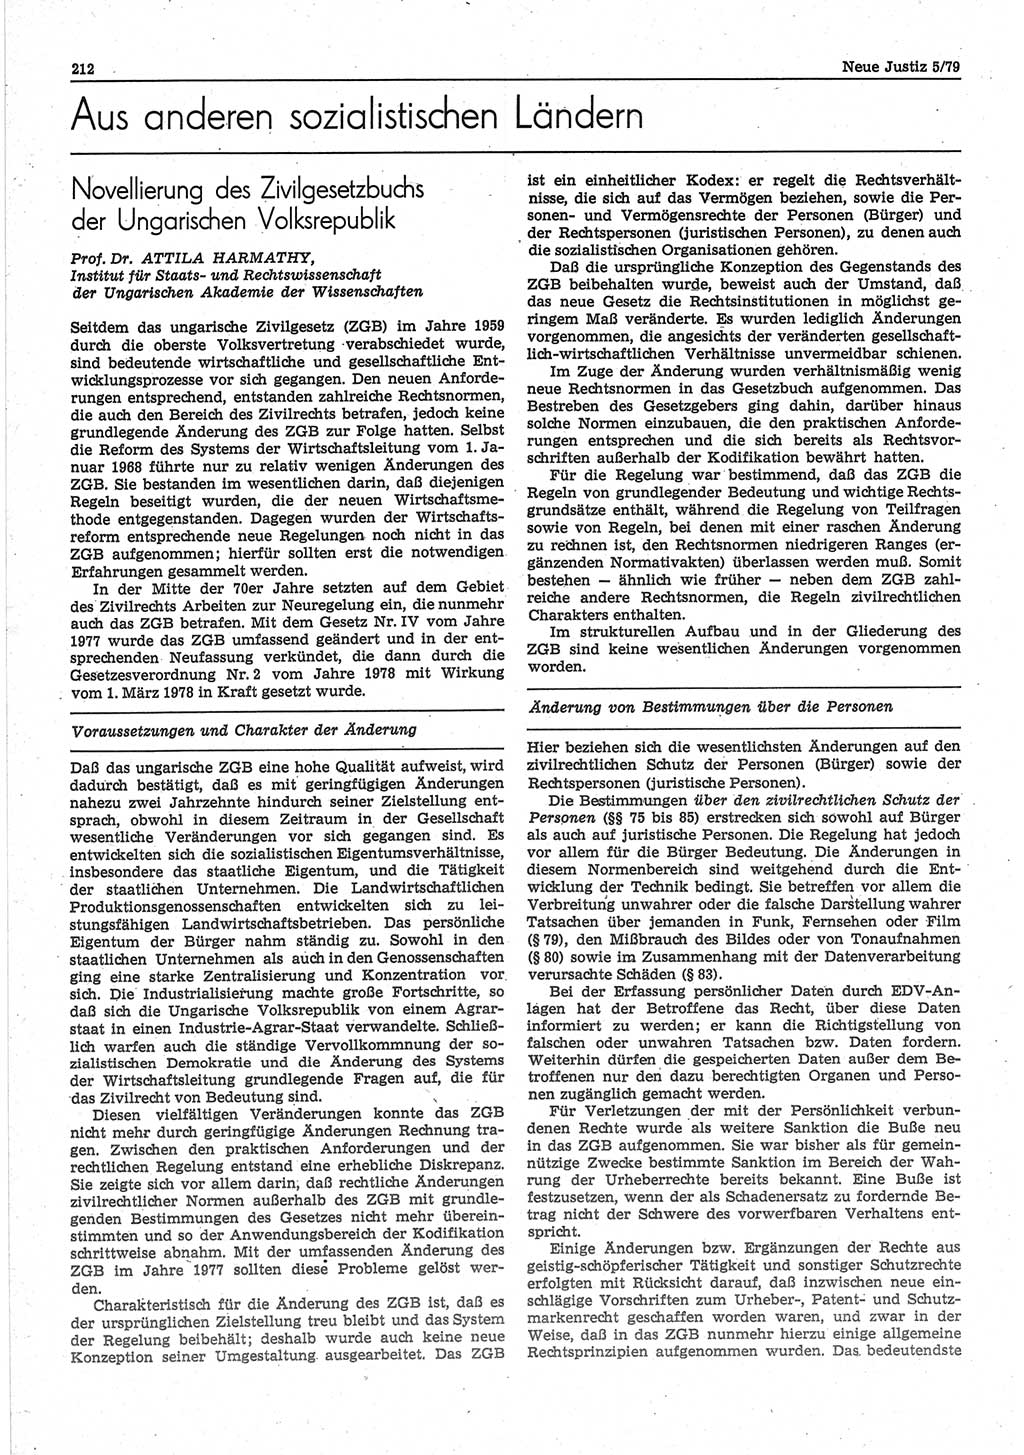 Neue Justiz (NJ), Zeitschrift für sozialistisches Recht und Gesetzlichkeit [Deutsche Demokratische Republik (DDR)], 33. Jahrgang 1979, Seite 212 (NJ DDR 1979, S. 212)